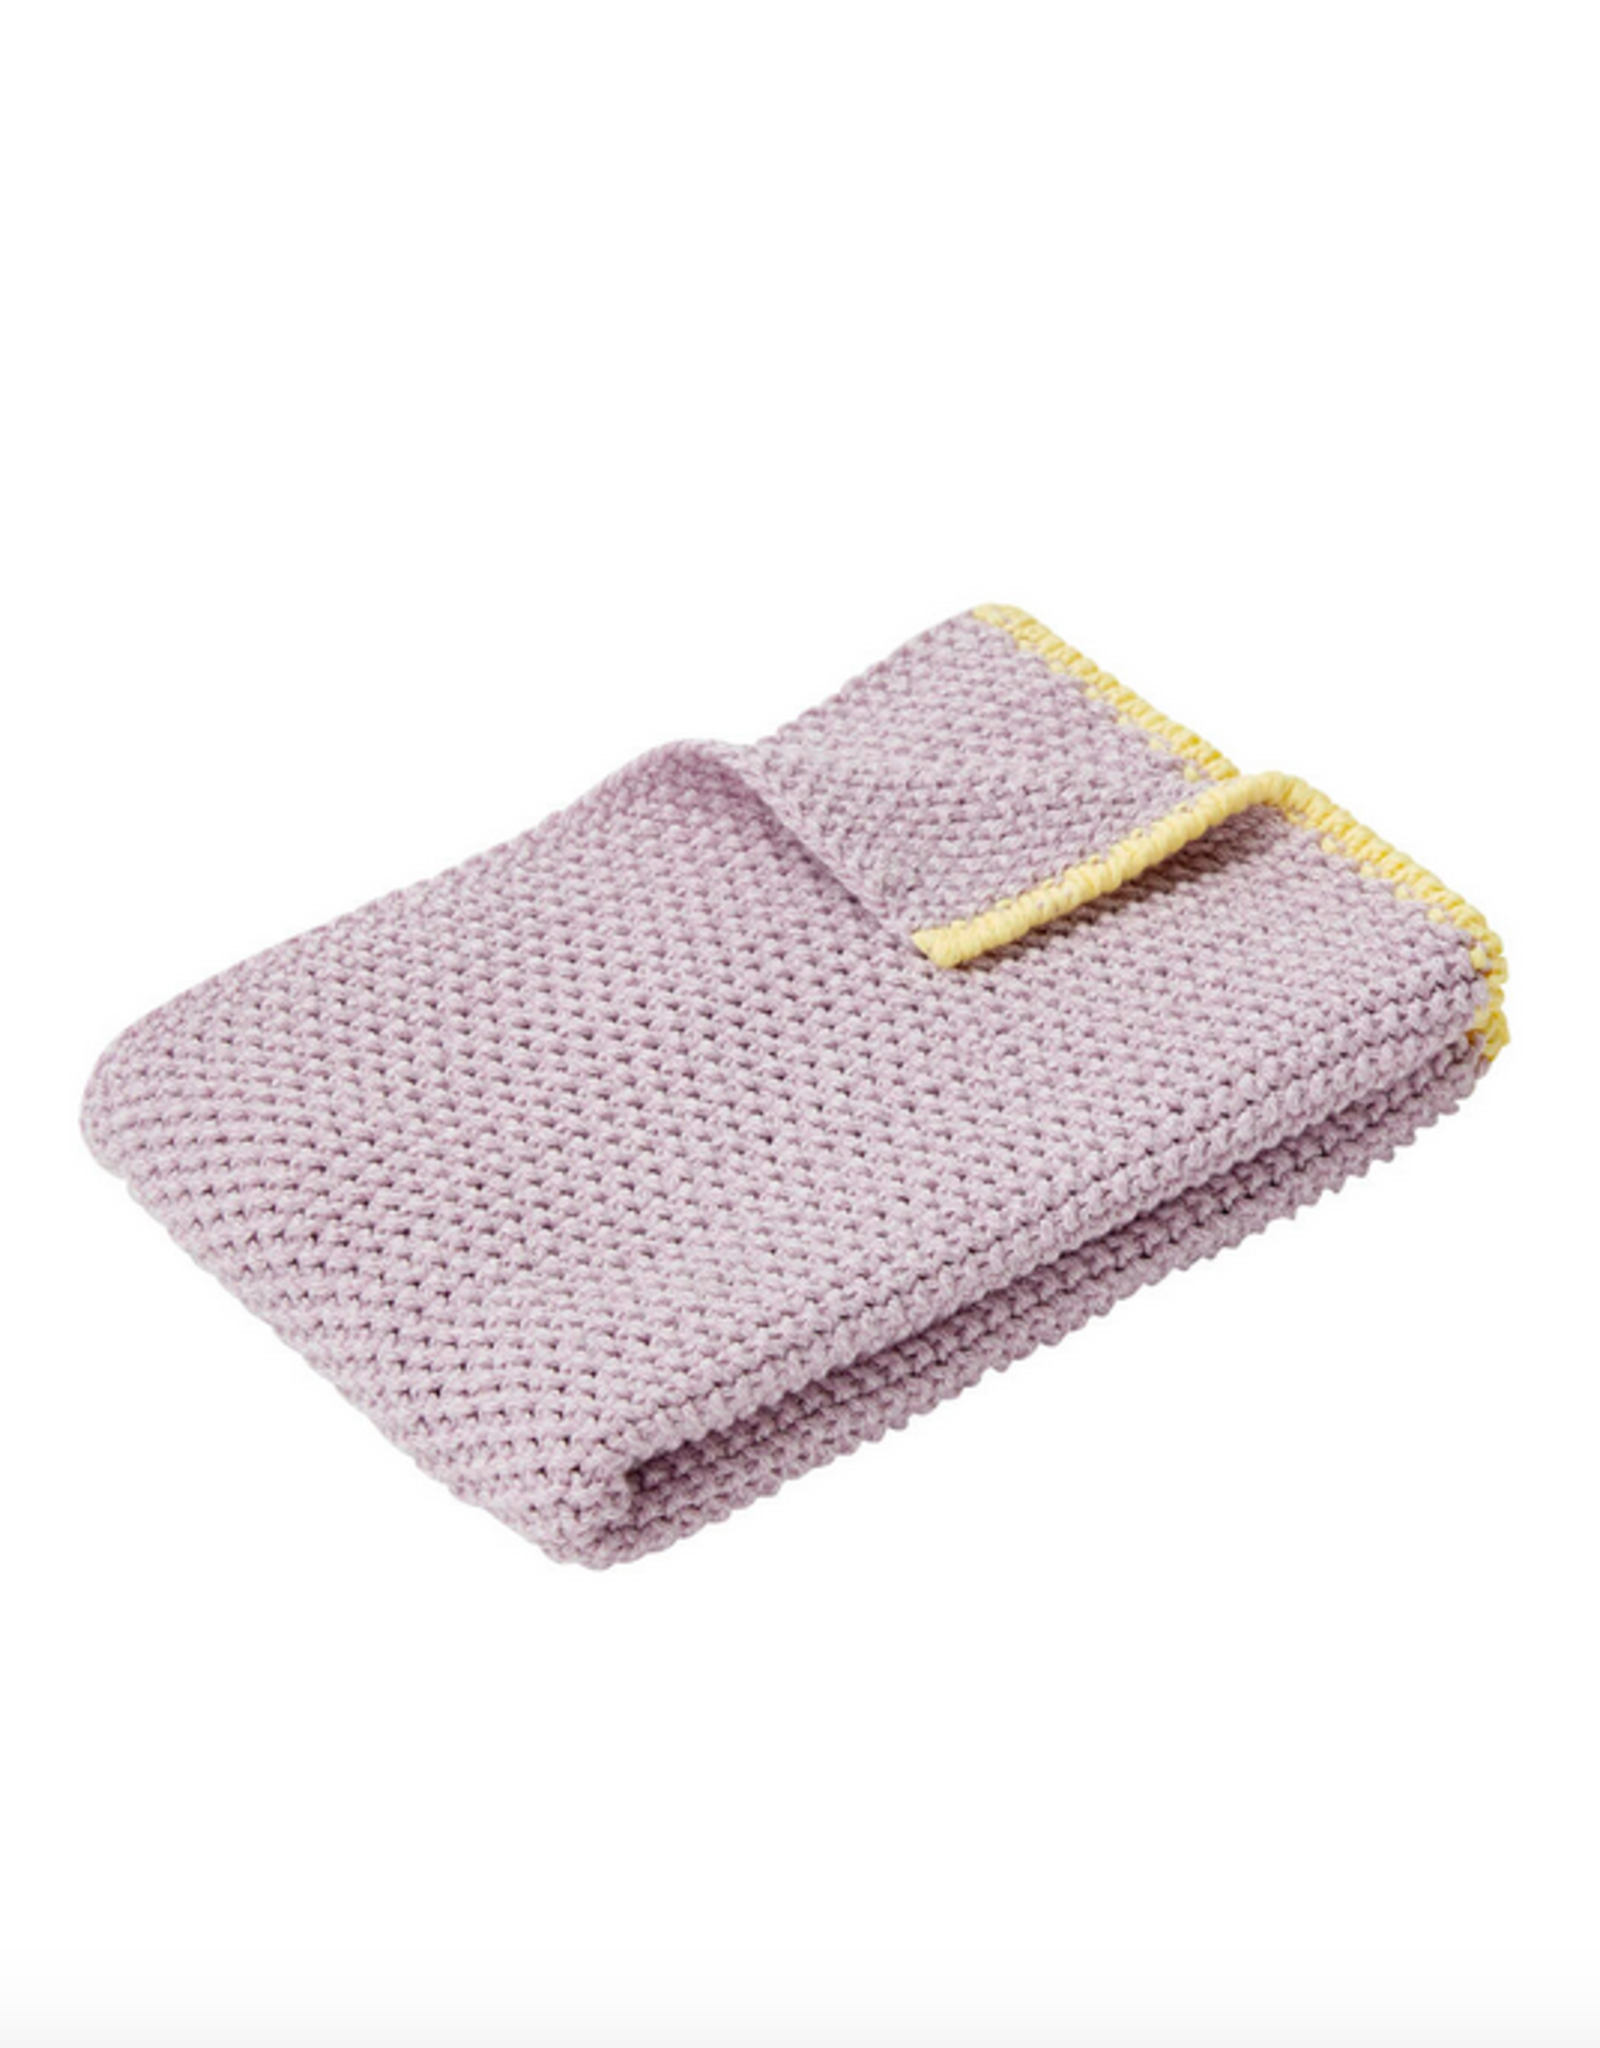 Hübsch Hubsch Herb Tea Towel Purple/Yellow